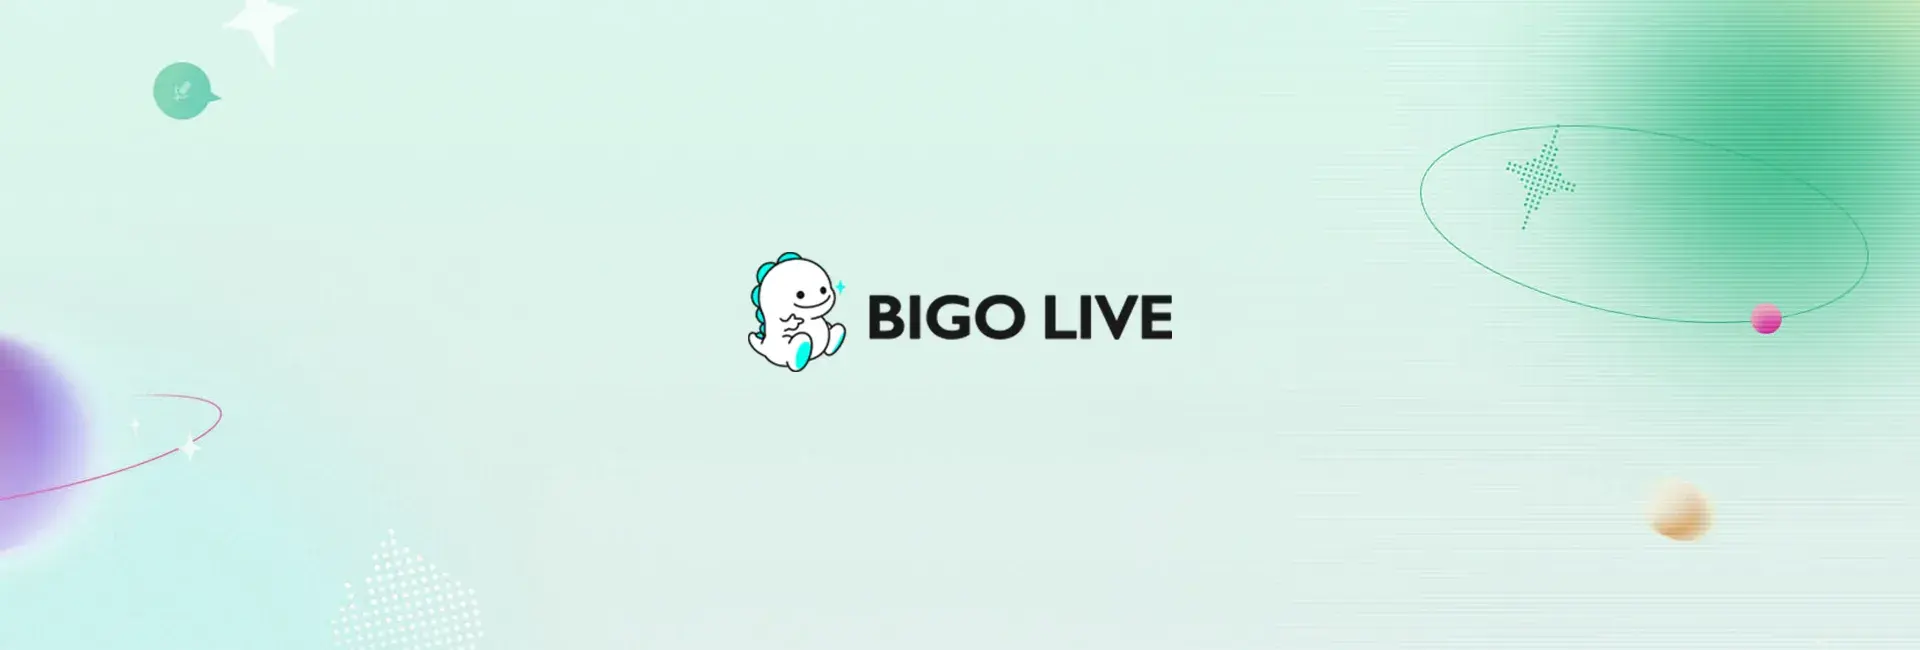 Bigo Live - 8400 Diamonds (Global)